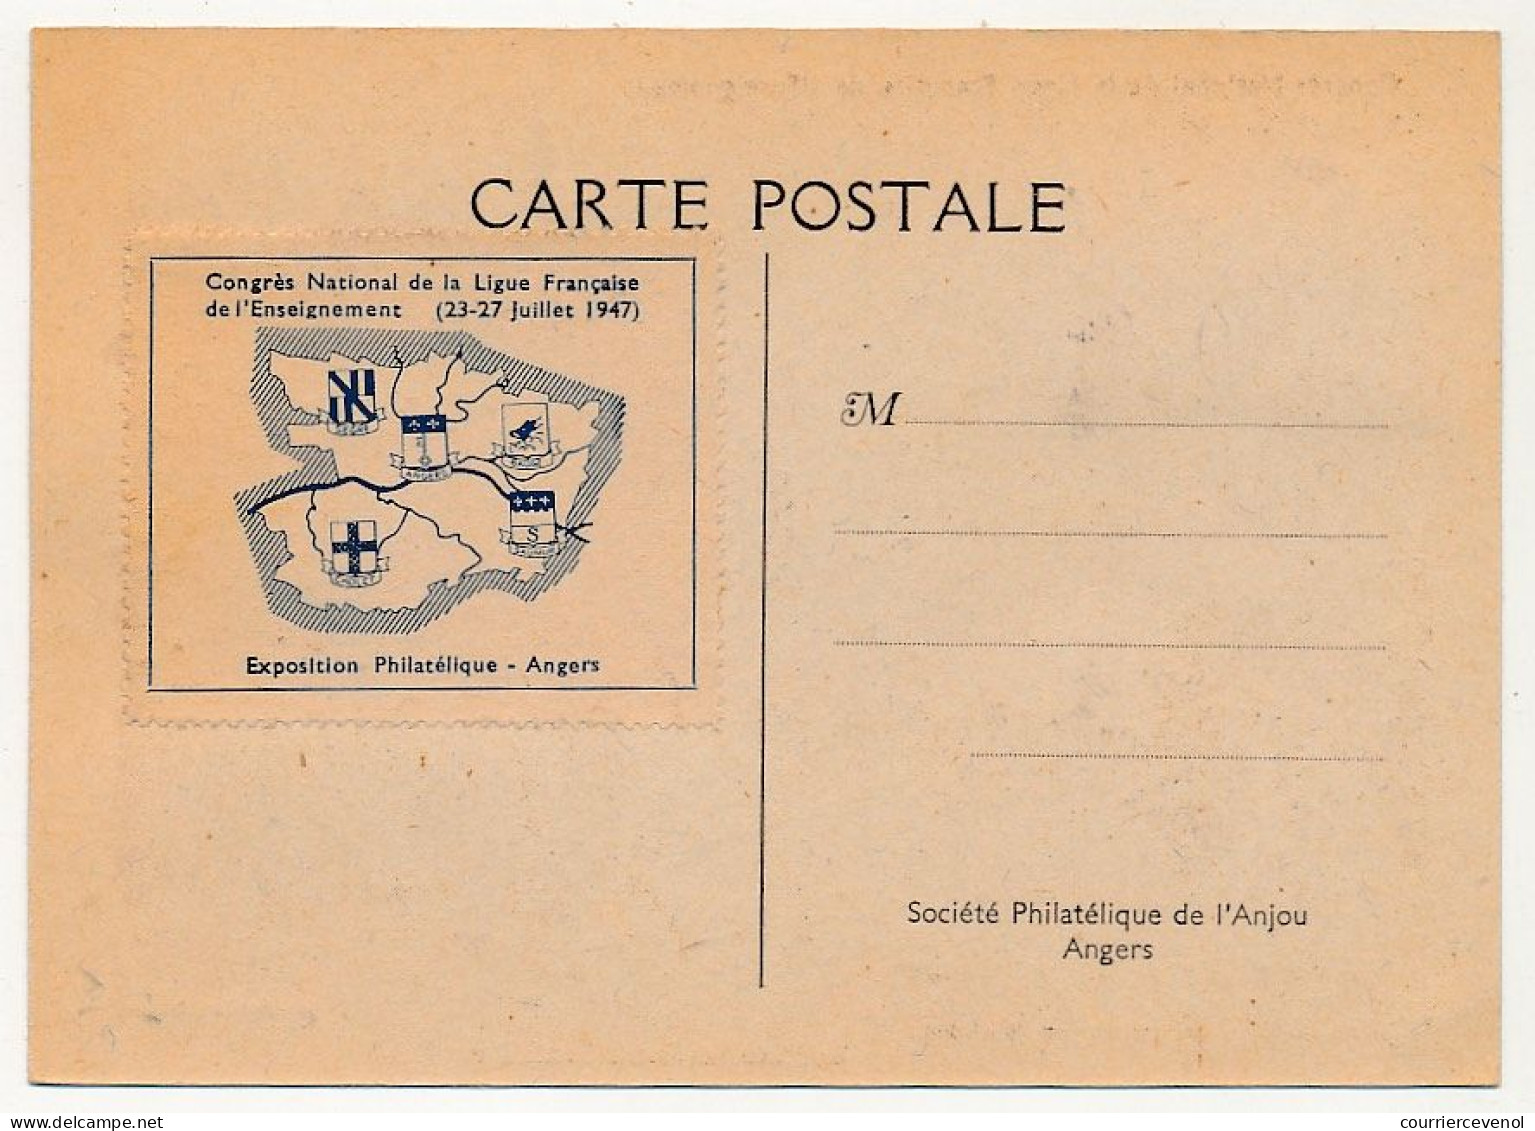 FRANCE - Carte Congrès National Ligue De L'Enseignement Angers 23/27 Juillet 1947 - Obl. Temporaire - Vignette Au Dos - Cachets Commémoratifs